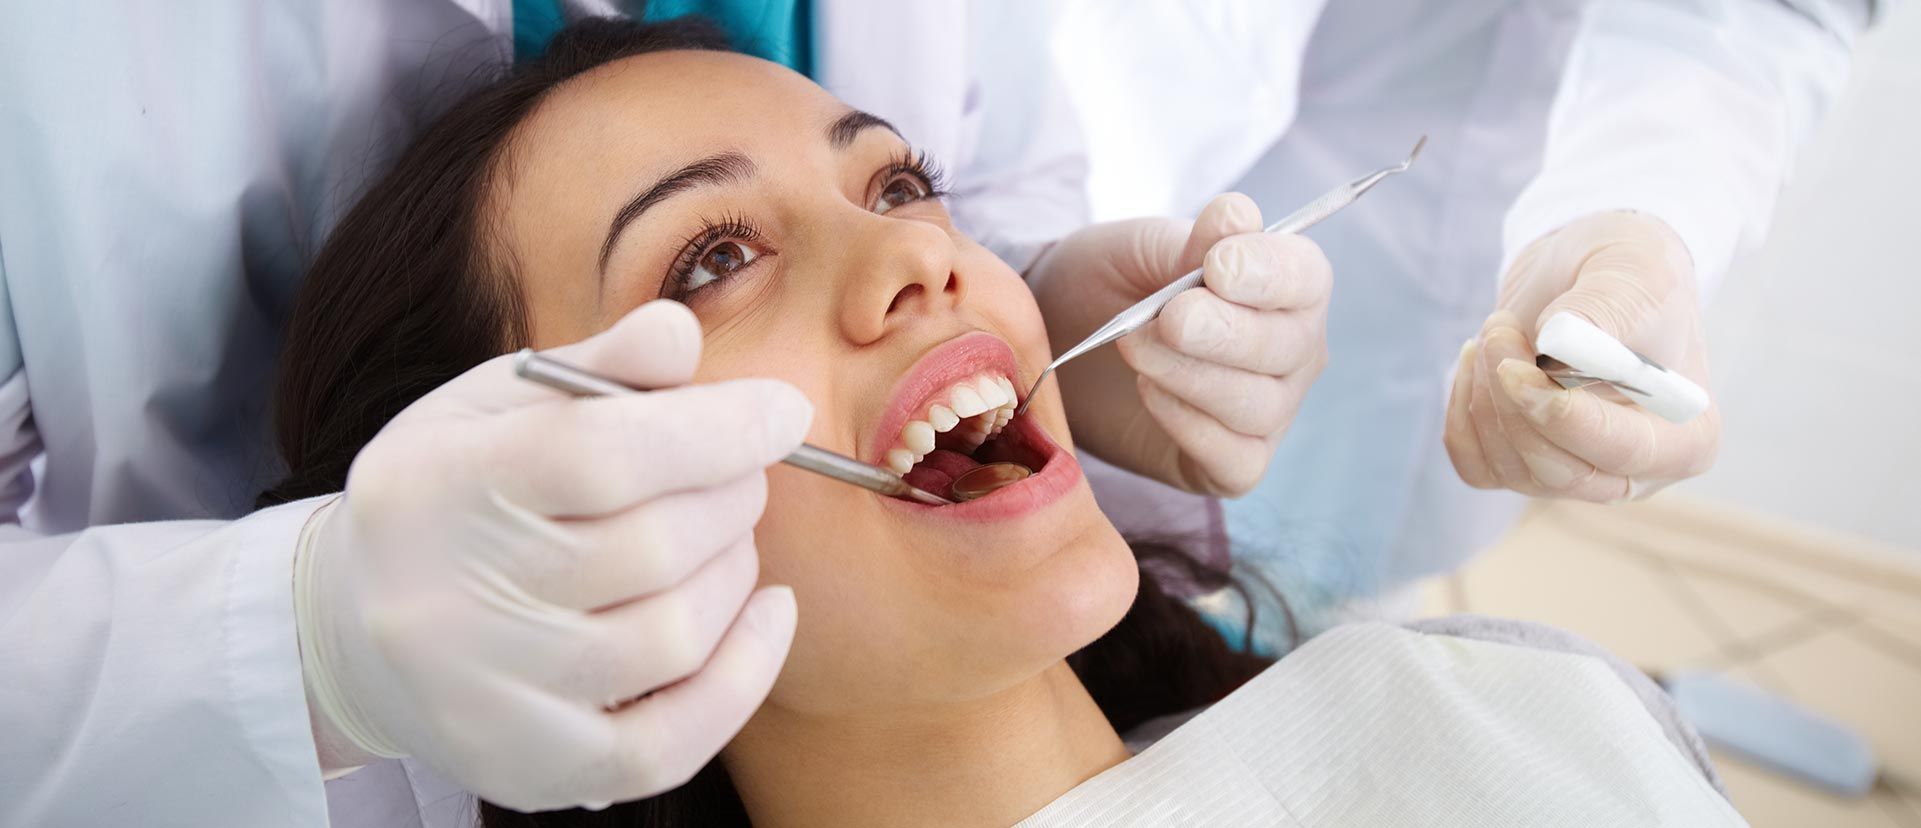 پرکردن دندان یک سطحی با آمالگام